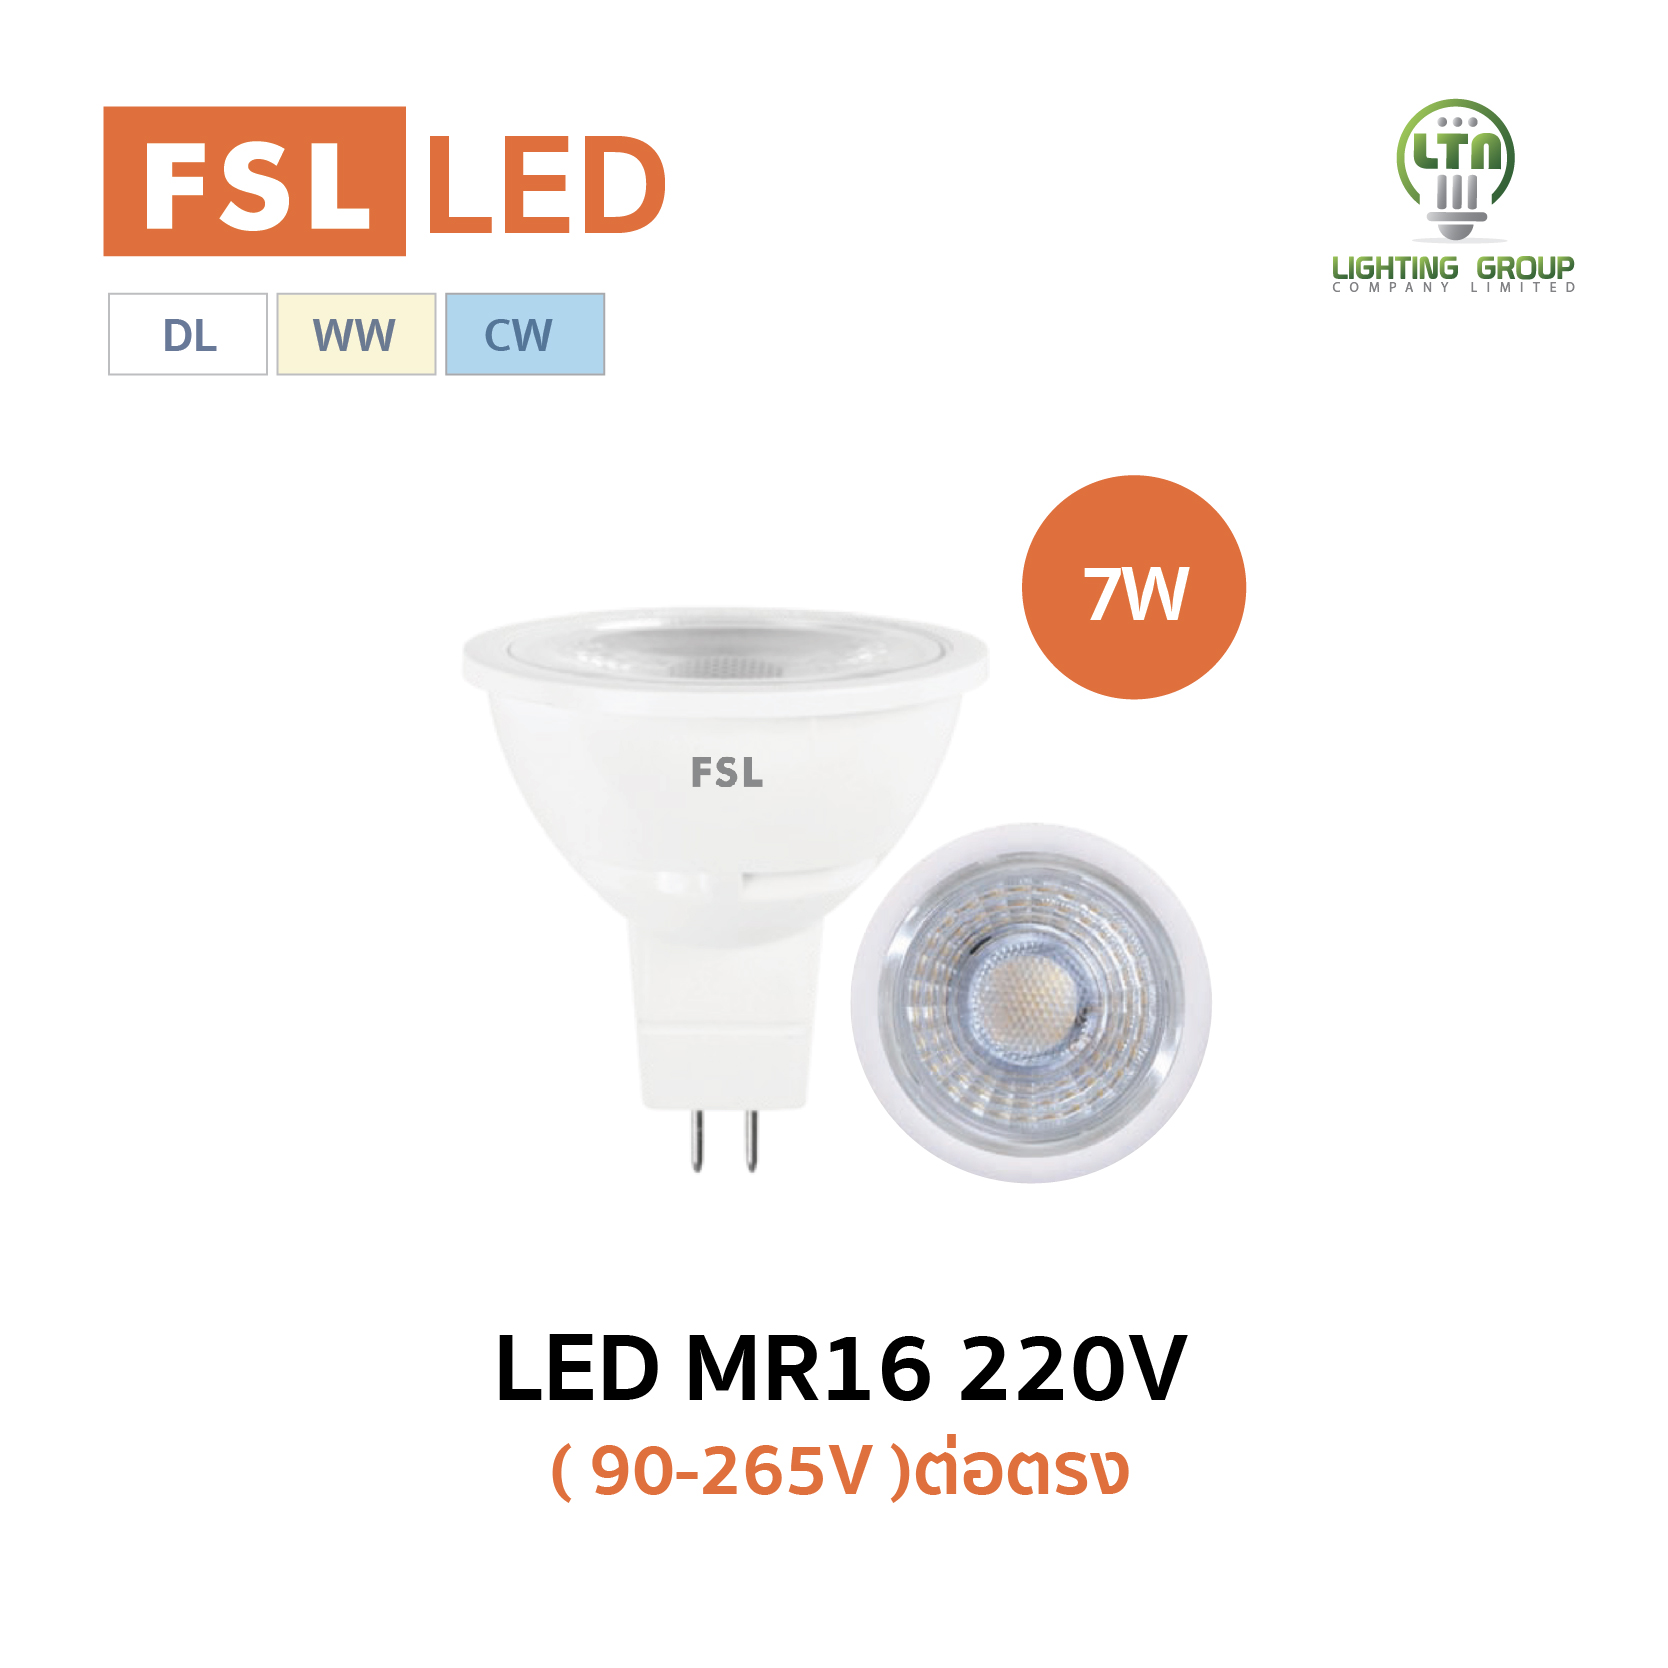 LED MR16 220V - LTN LIGHTING